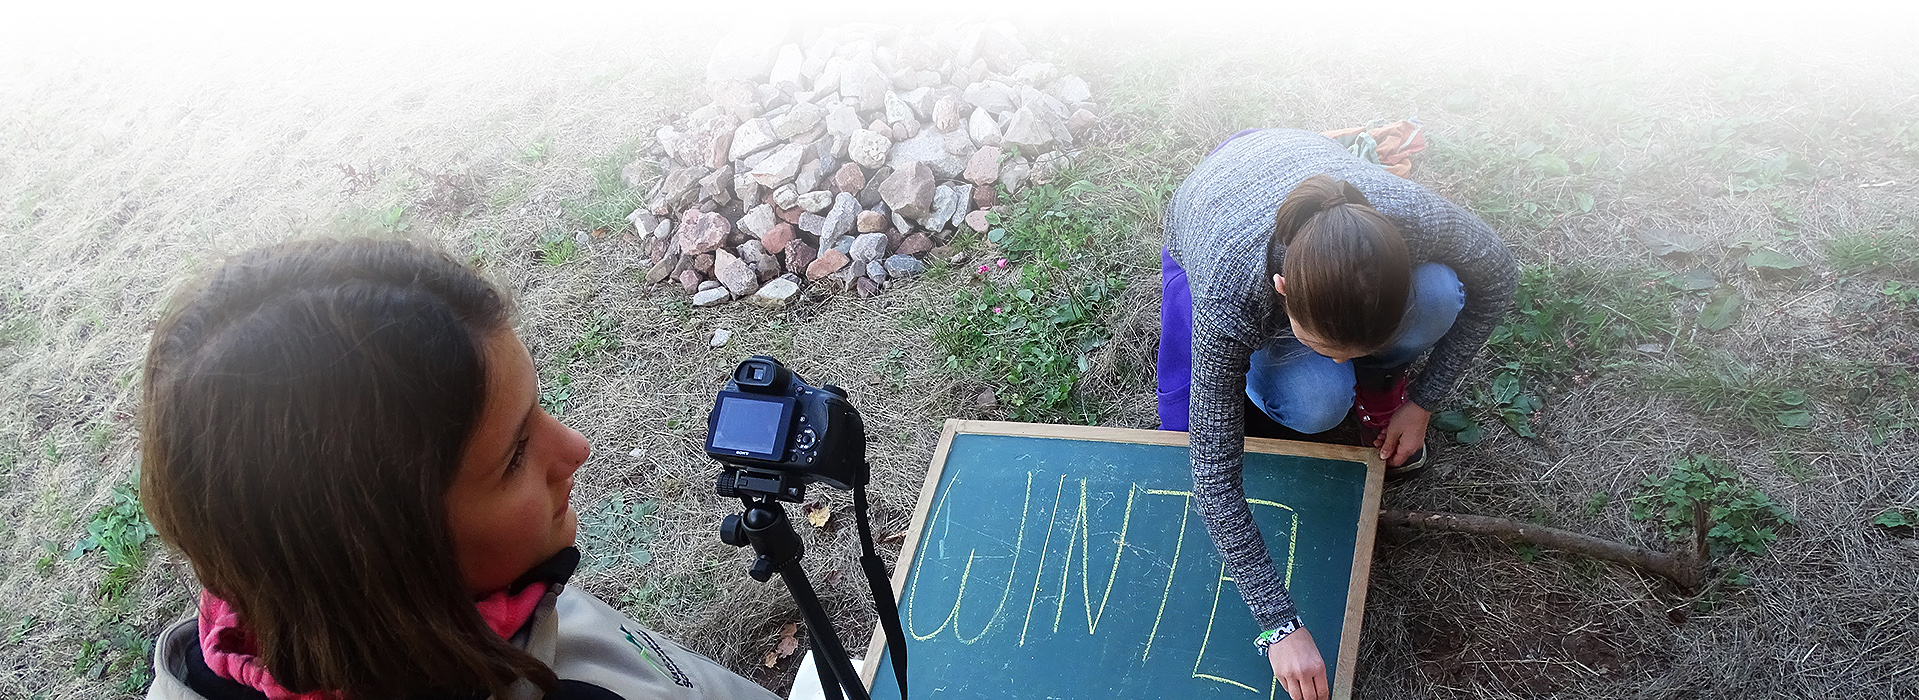 Juniorranger am Filmset. Ein Mädchen schreibt mit Kreide auf eine Tafel. Links im Bild steht ein weiteres Mädchen mit Kamera.